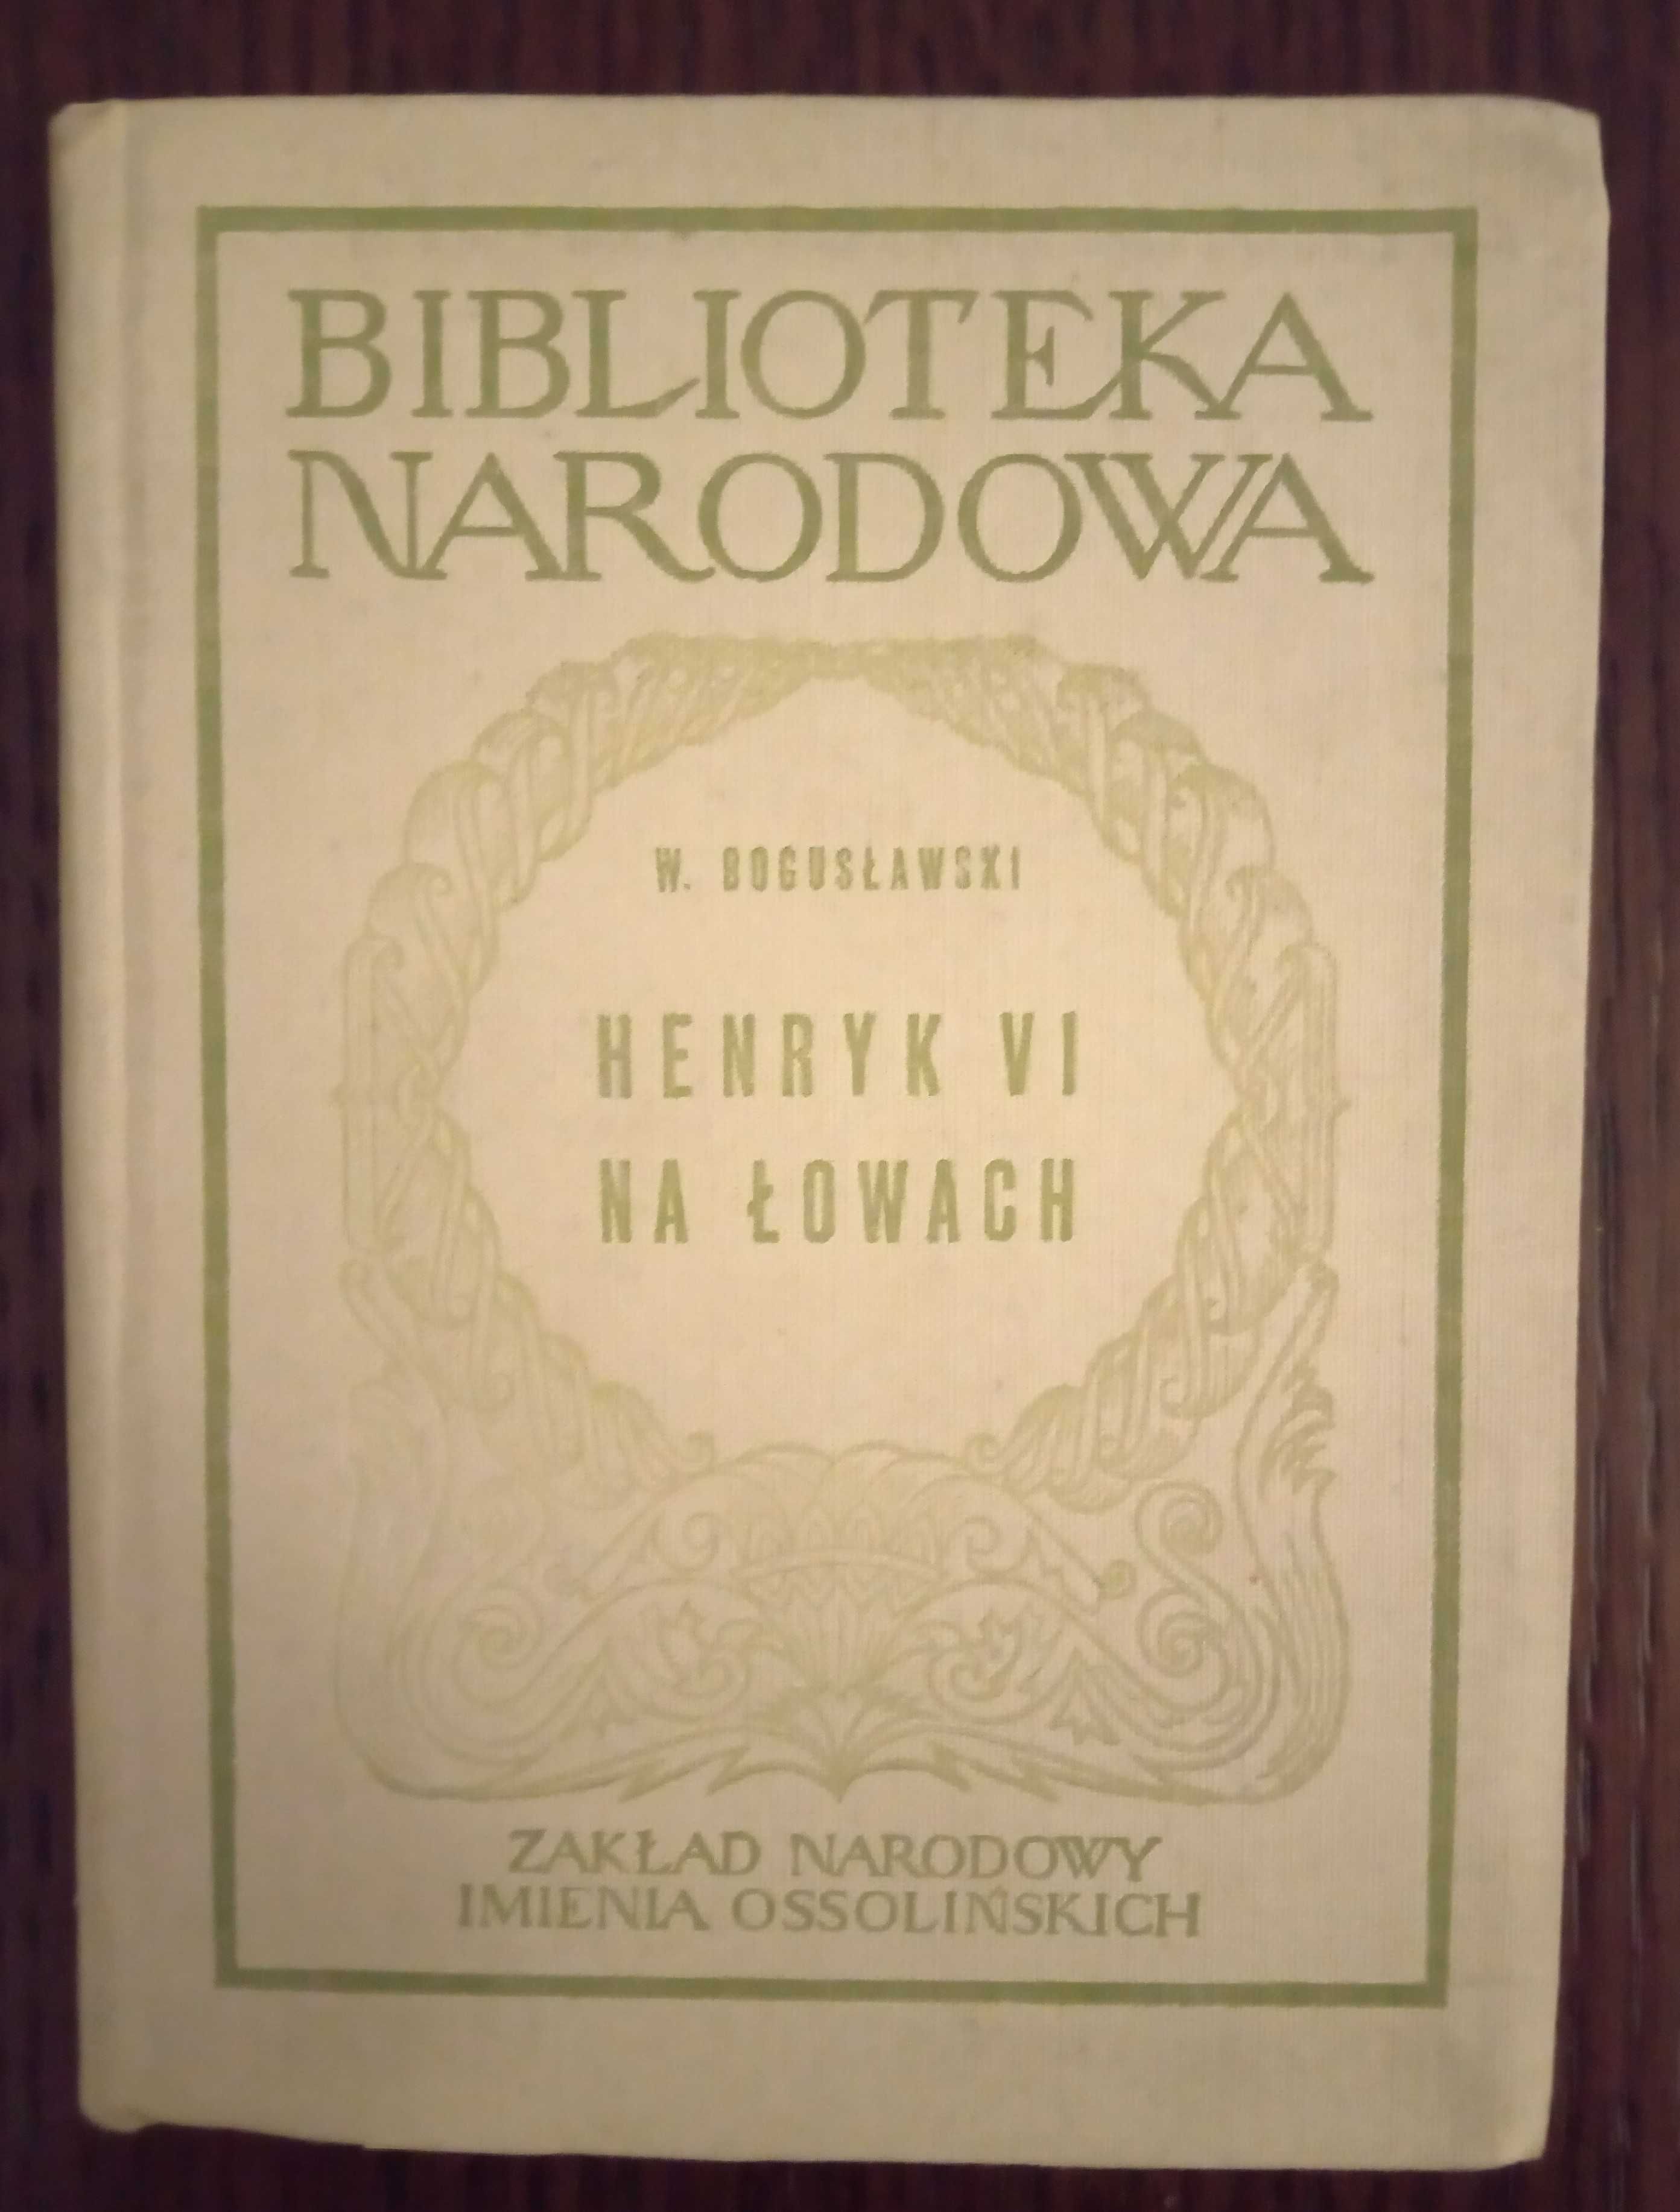 Henryk VI na łowach - Wojciech Bogusławski